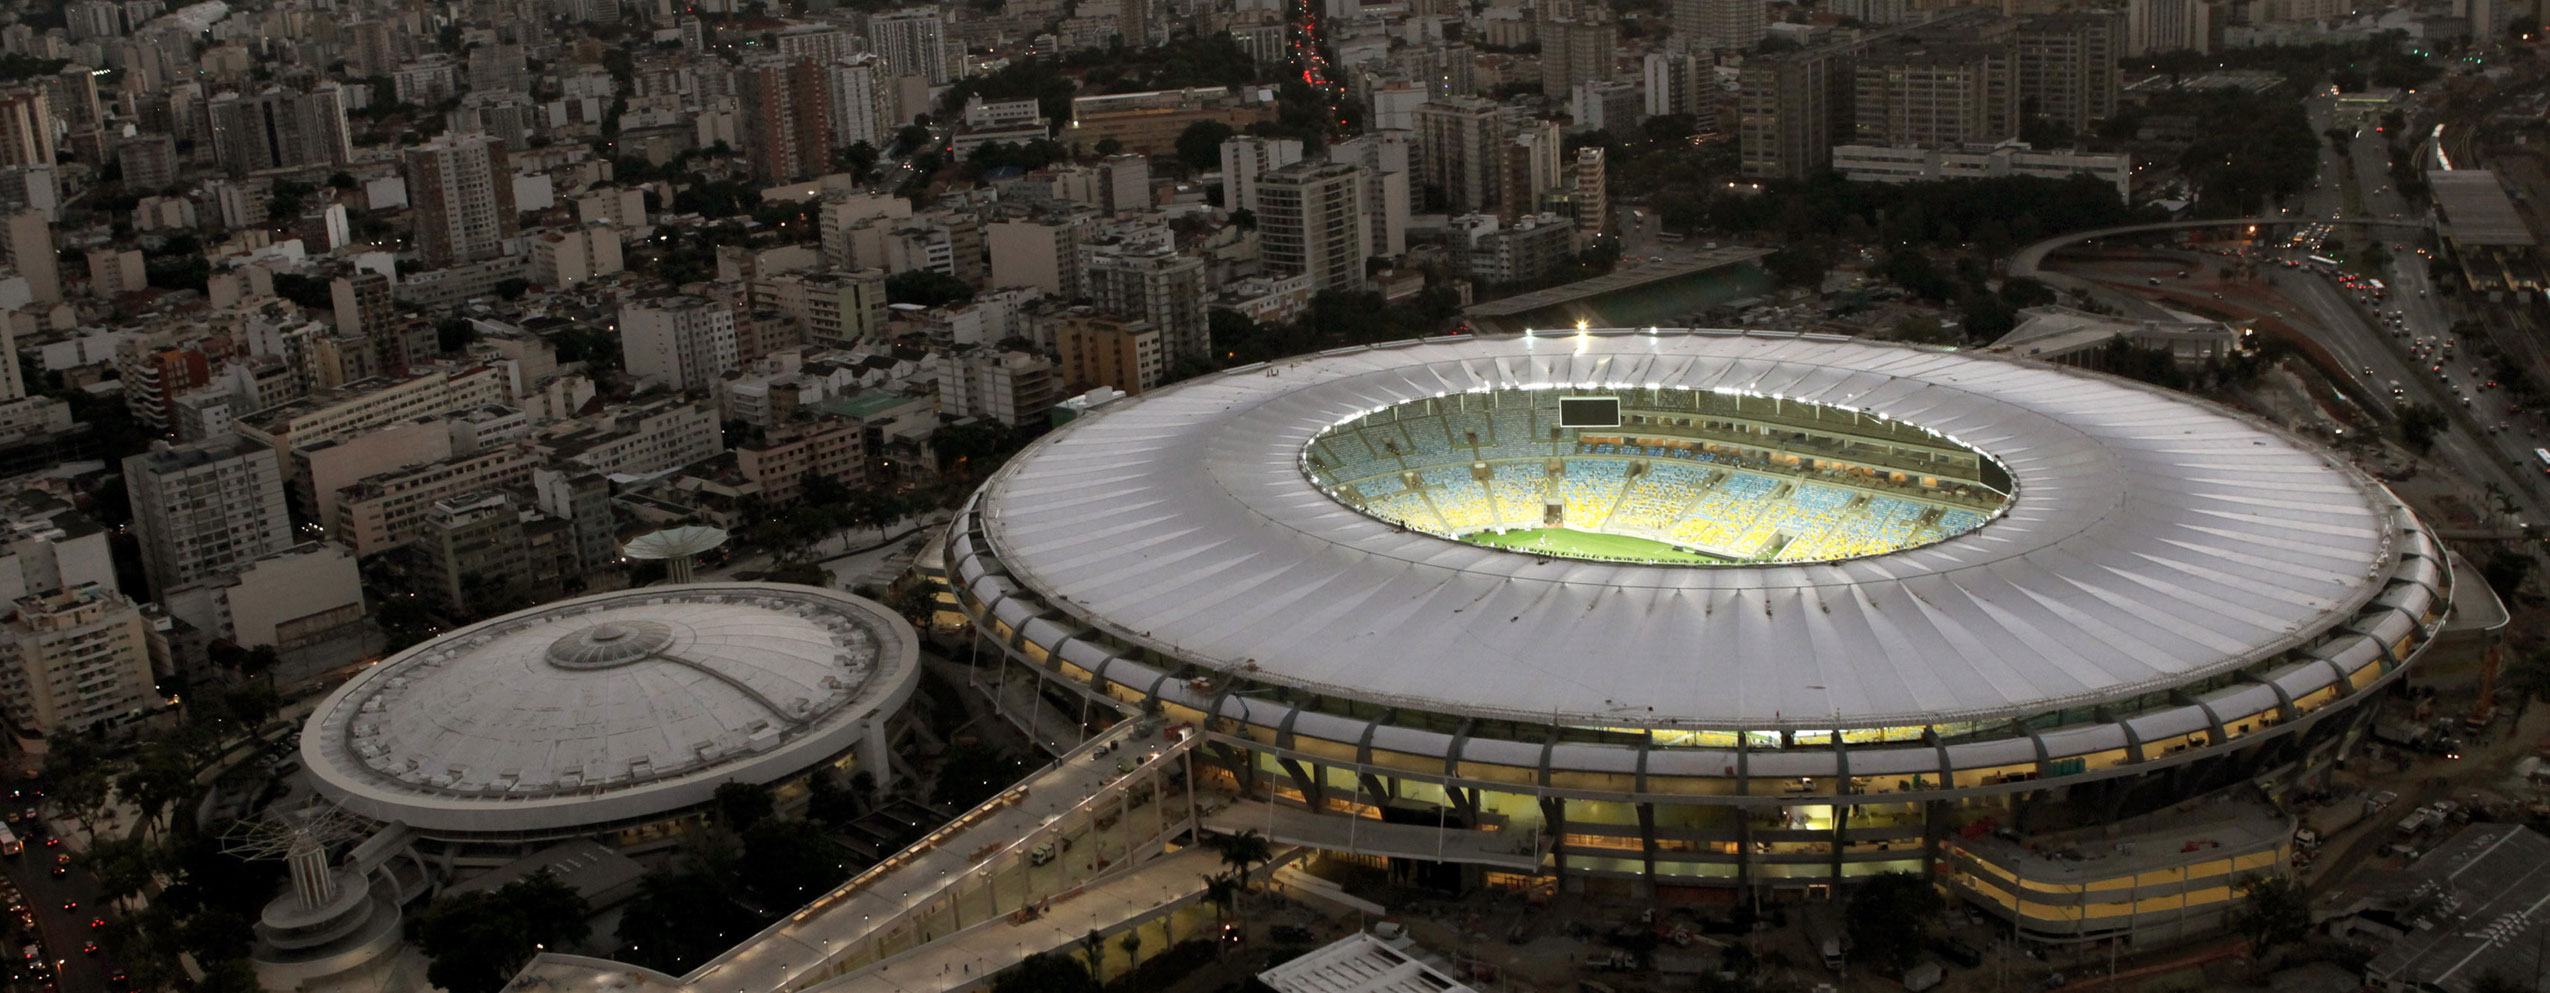 Estadio de Maracaná, Río de Janeiro, Brasil